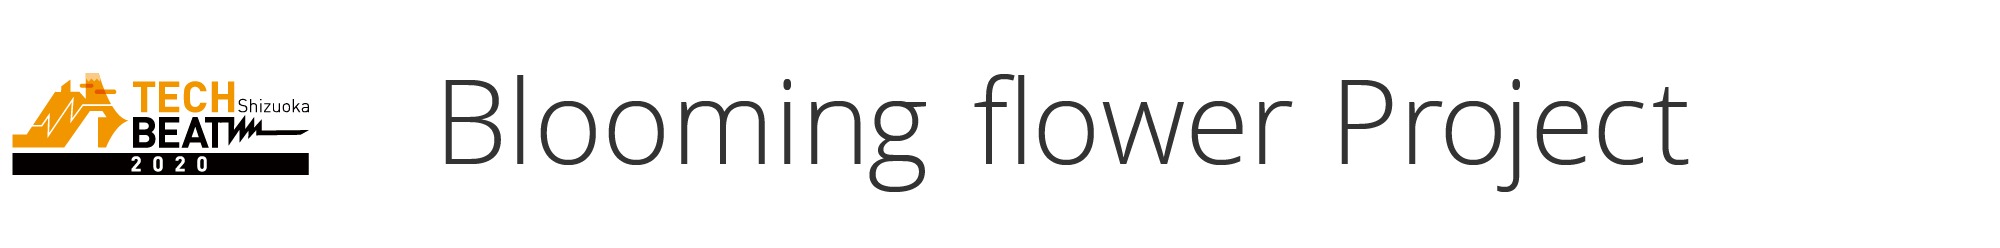 Blooming flower